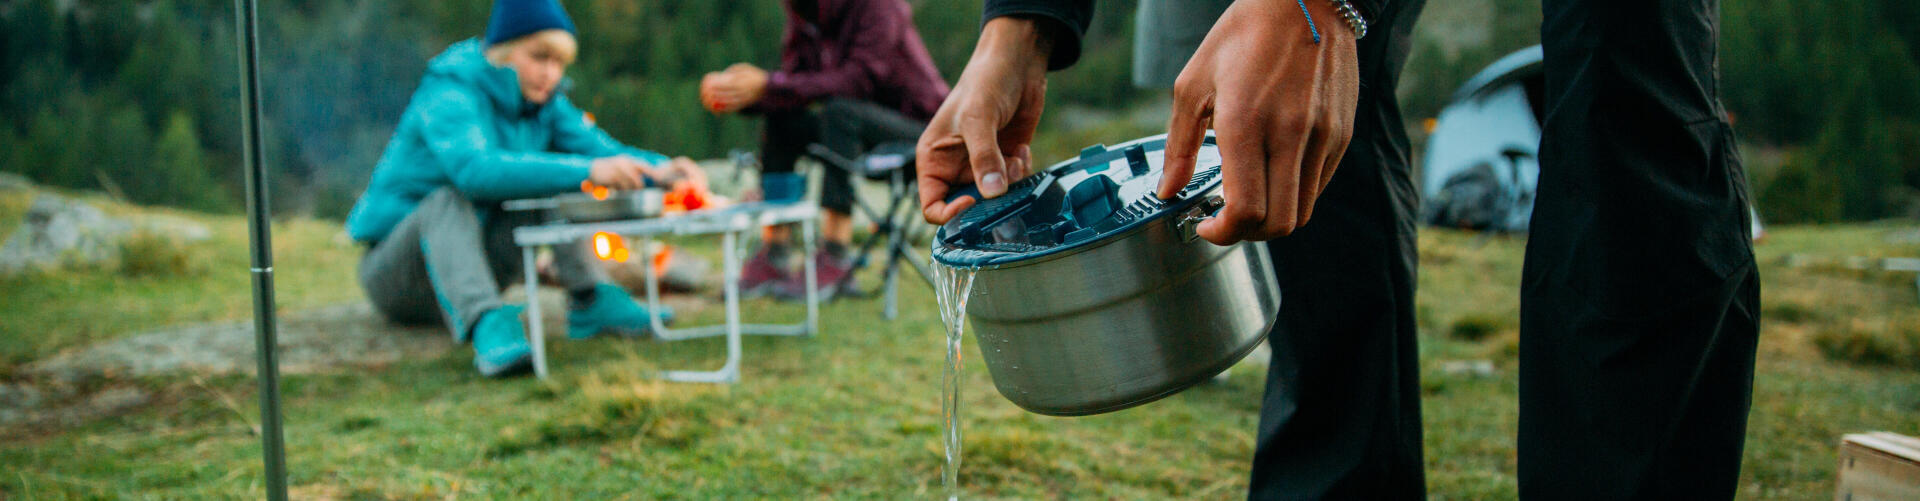 露營 | 教你5個清洗鍋具的方法